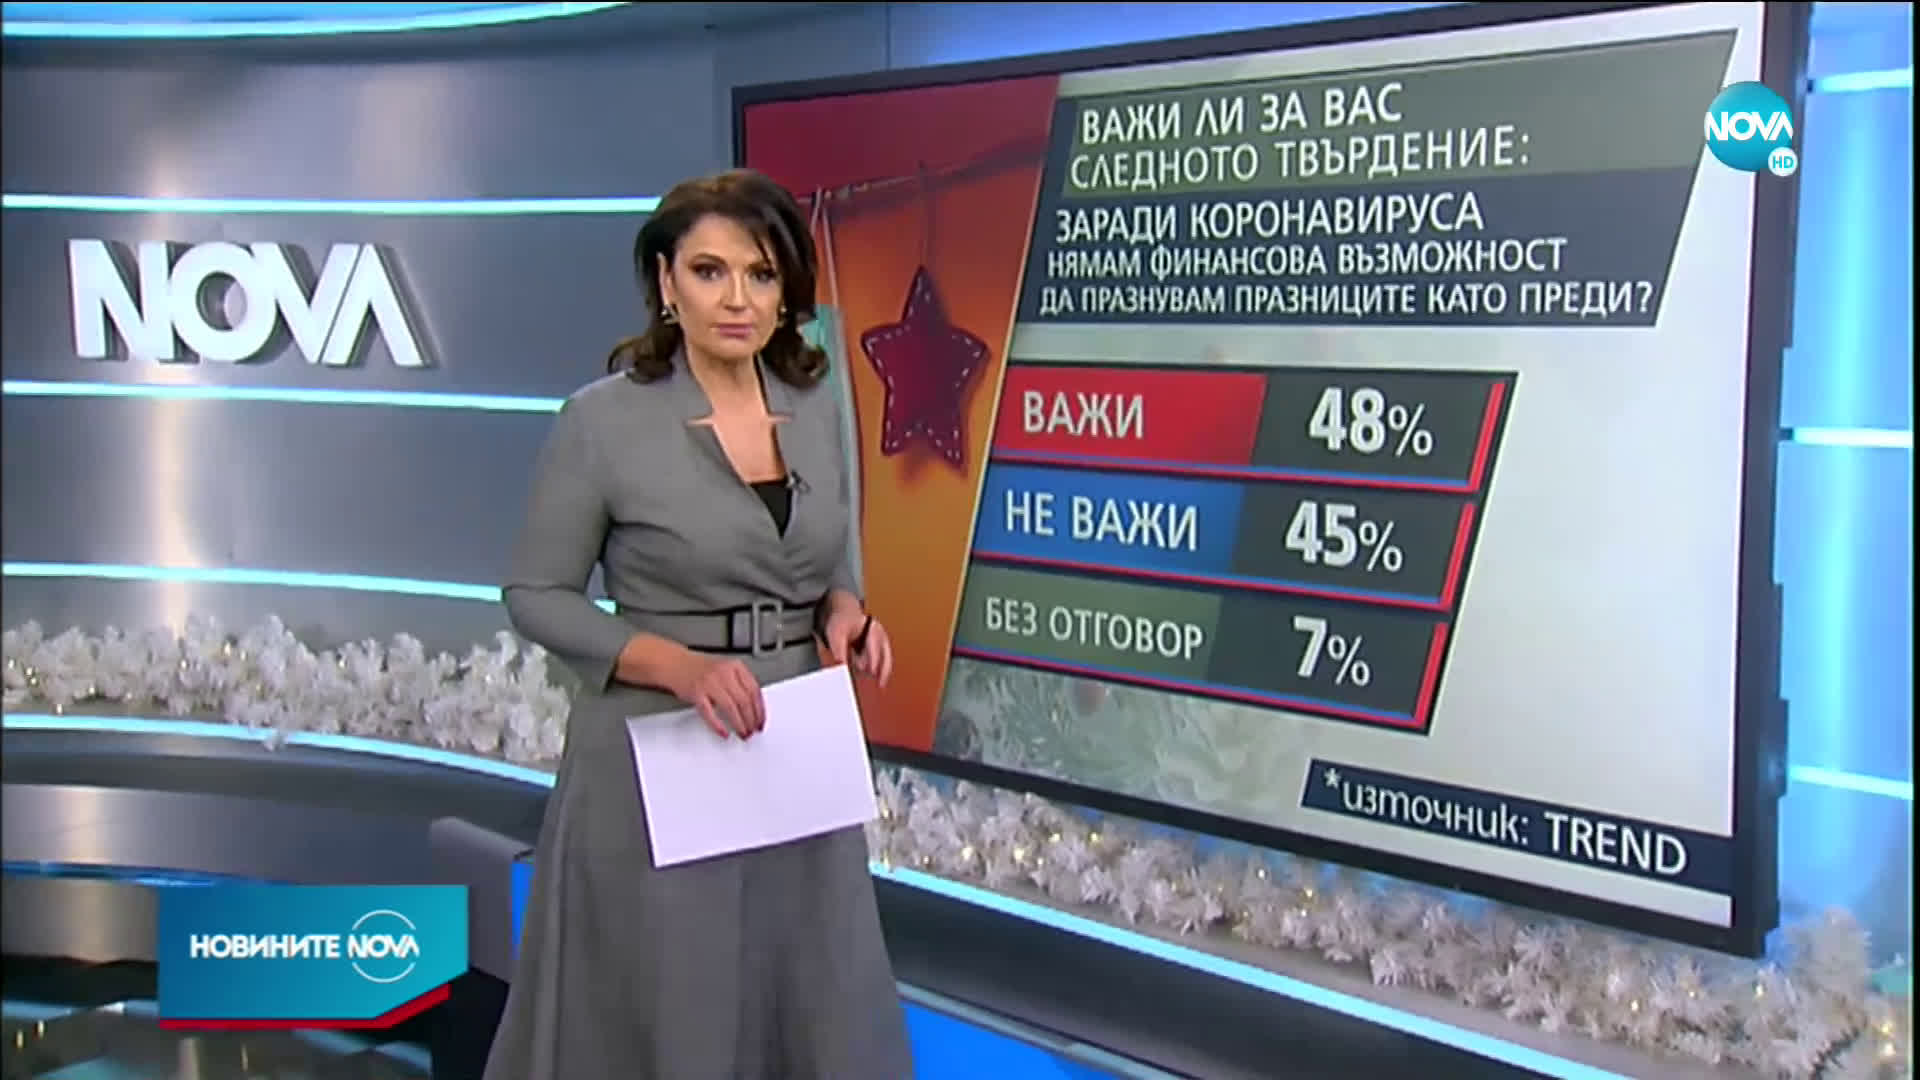 „Тренд”: 45% от българите нямат настроение да празнуват